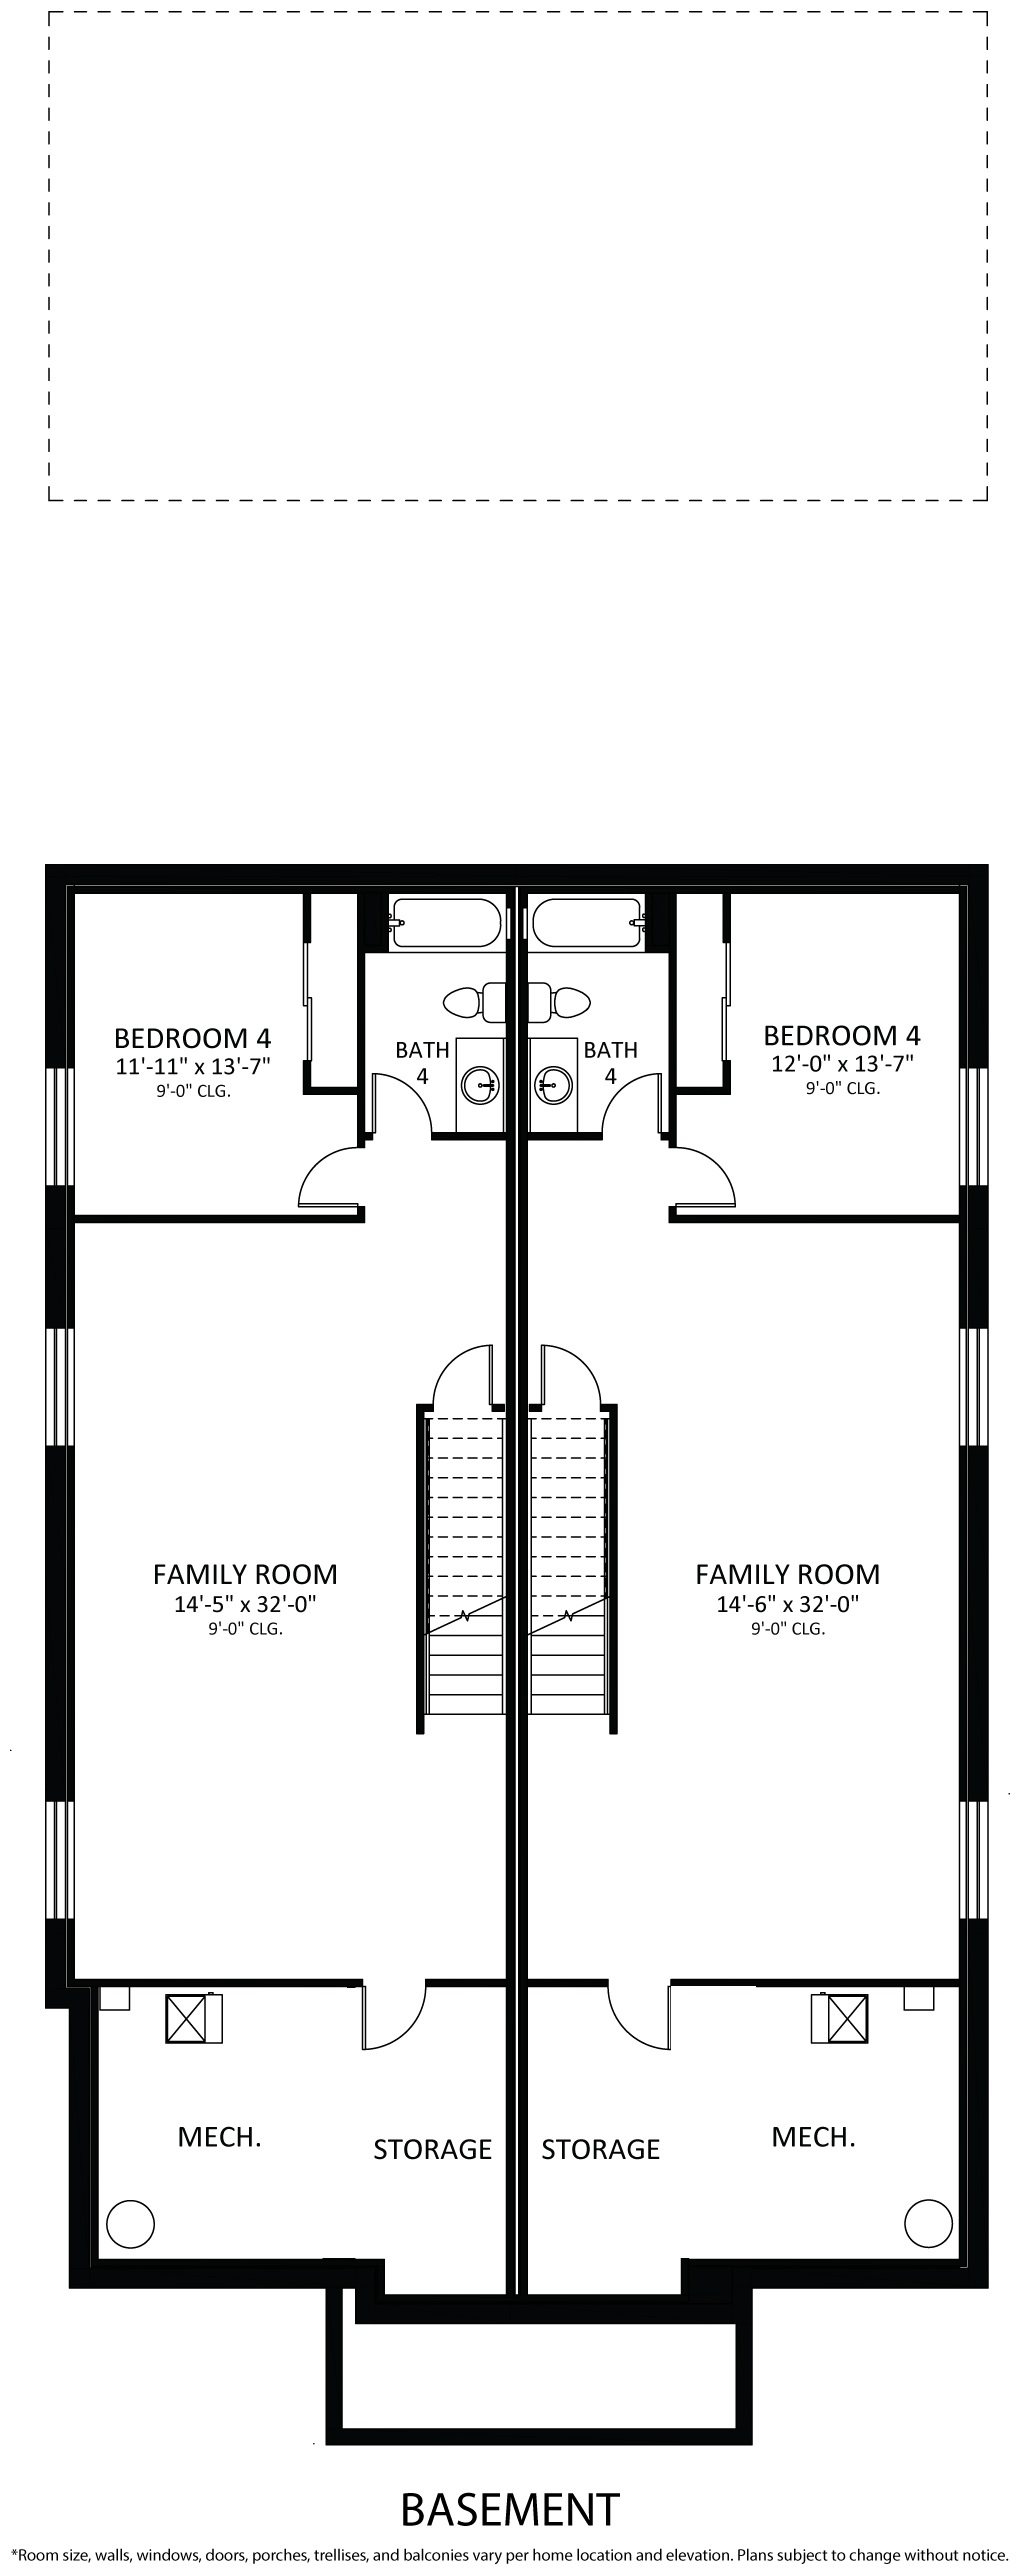 Floorplan 04. Oxford 4.jpg for 580 N. Adams Street